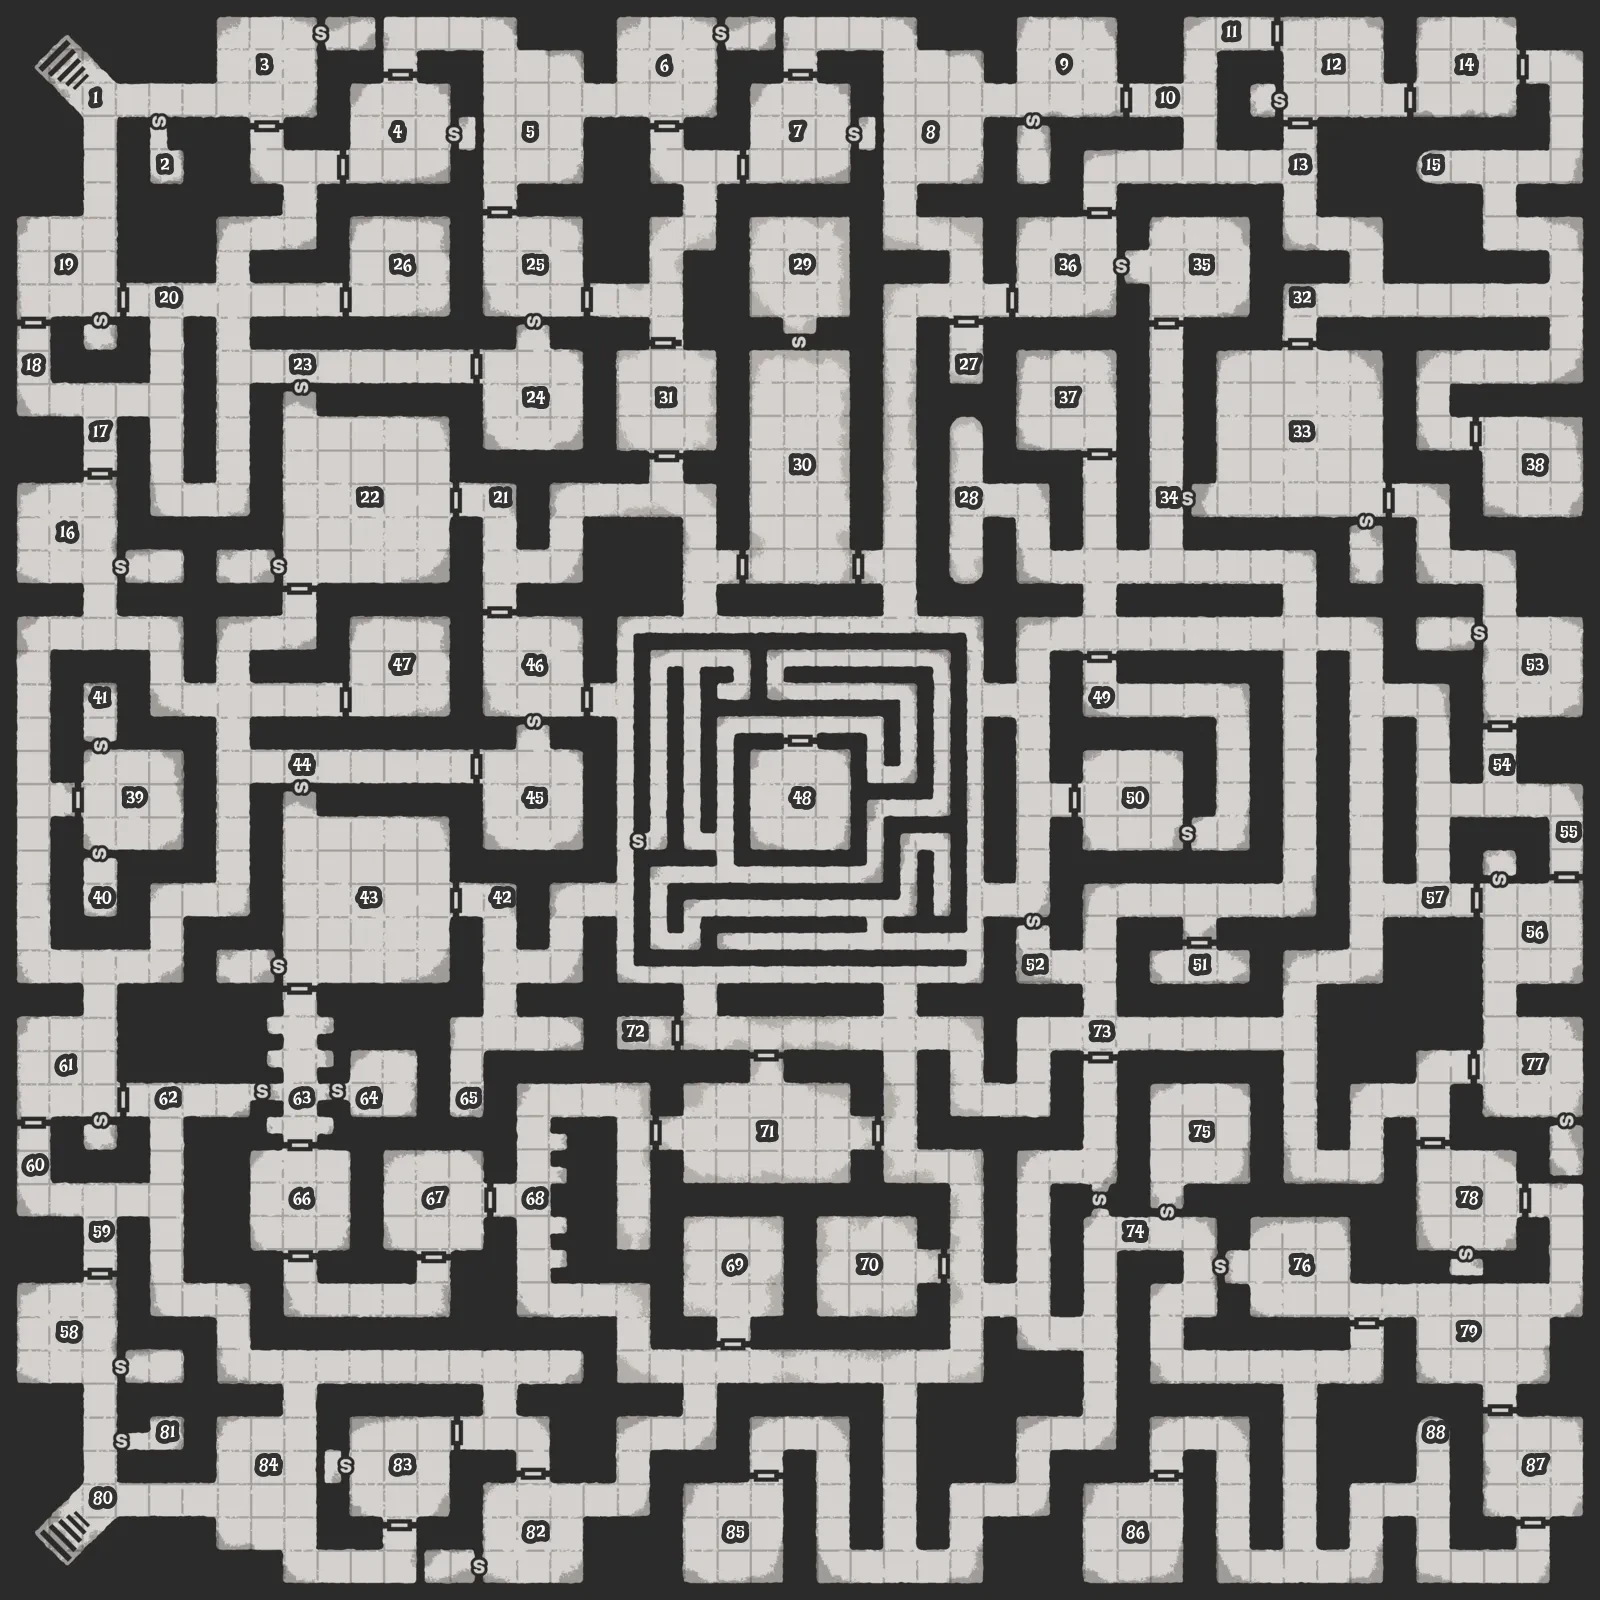 Maze in dungeon